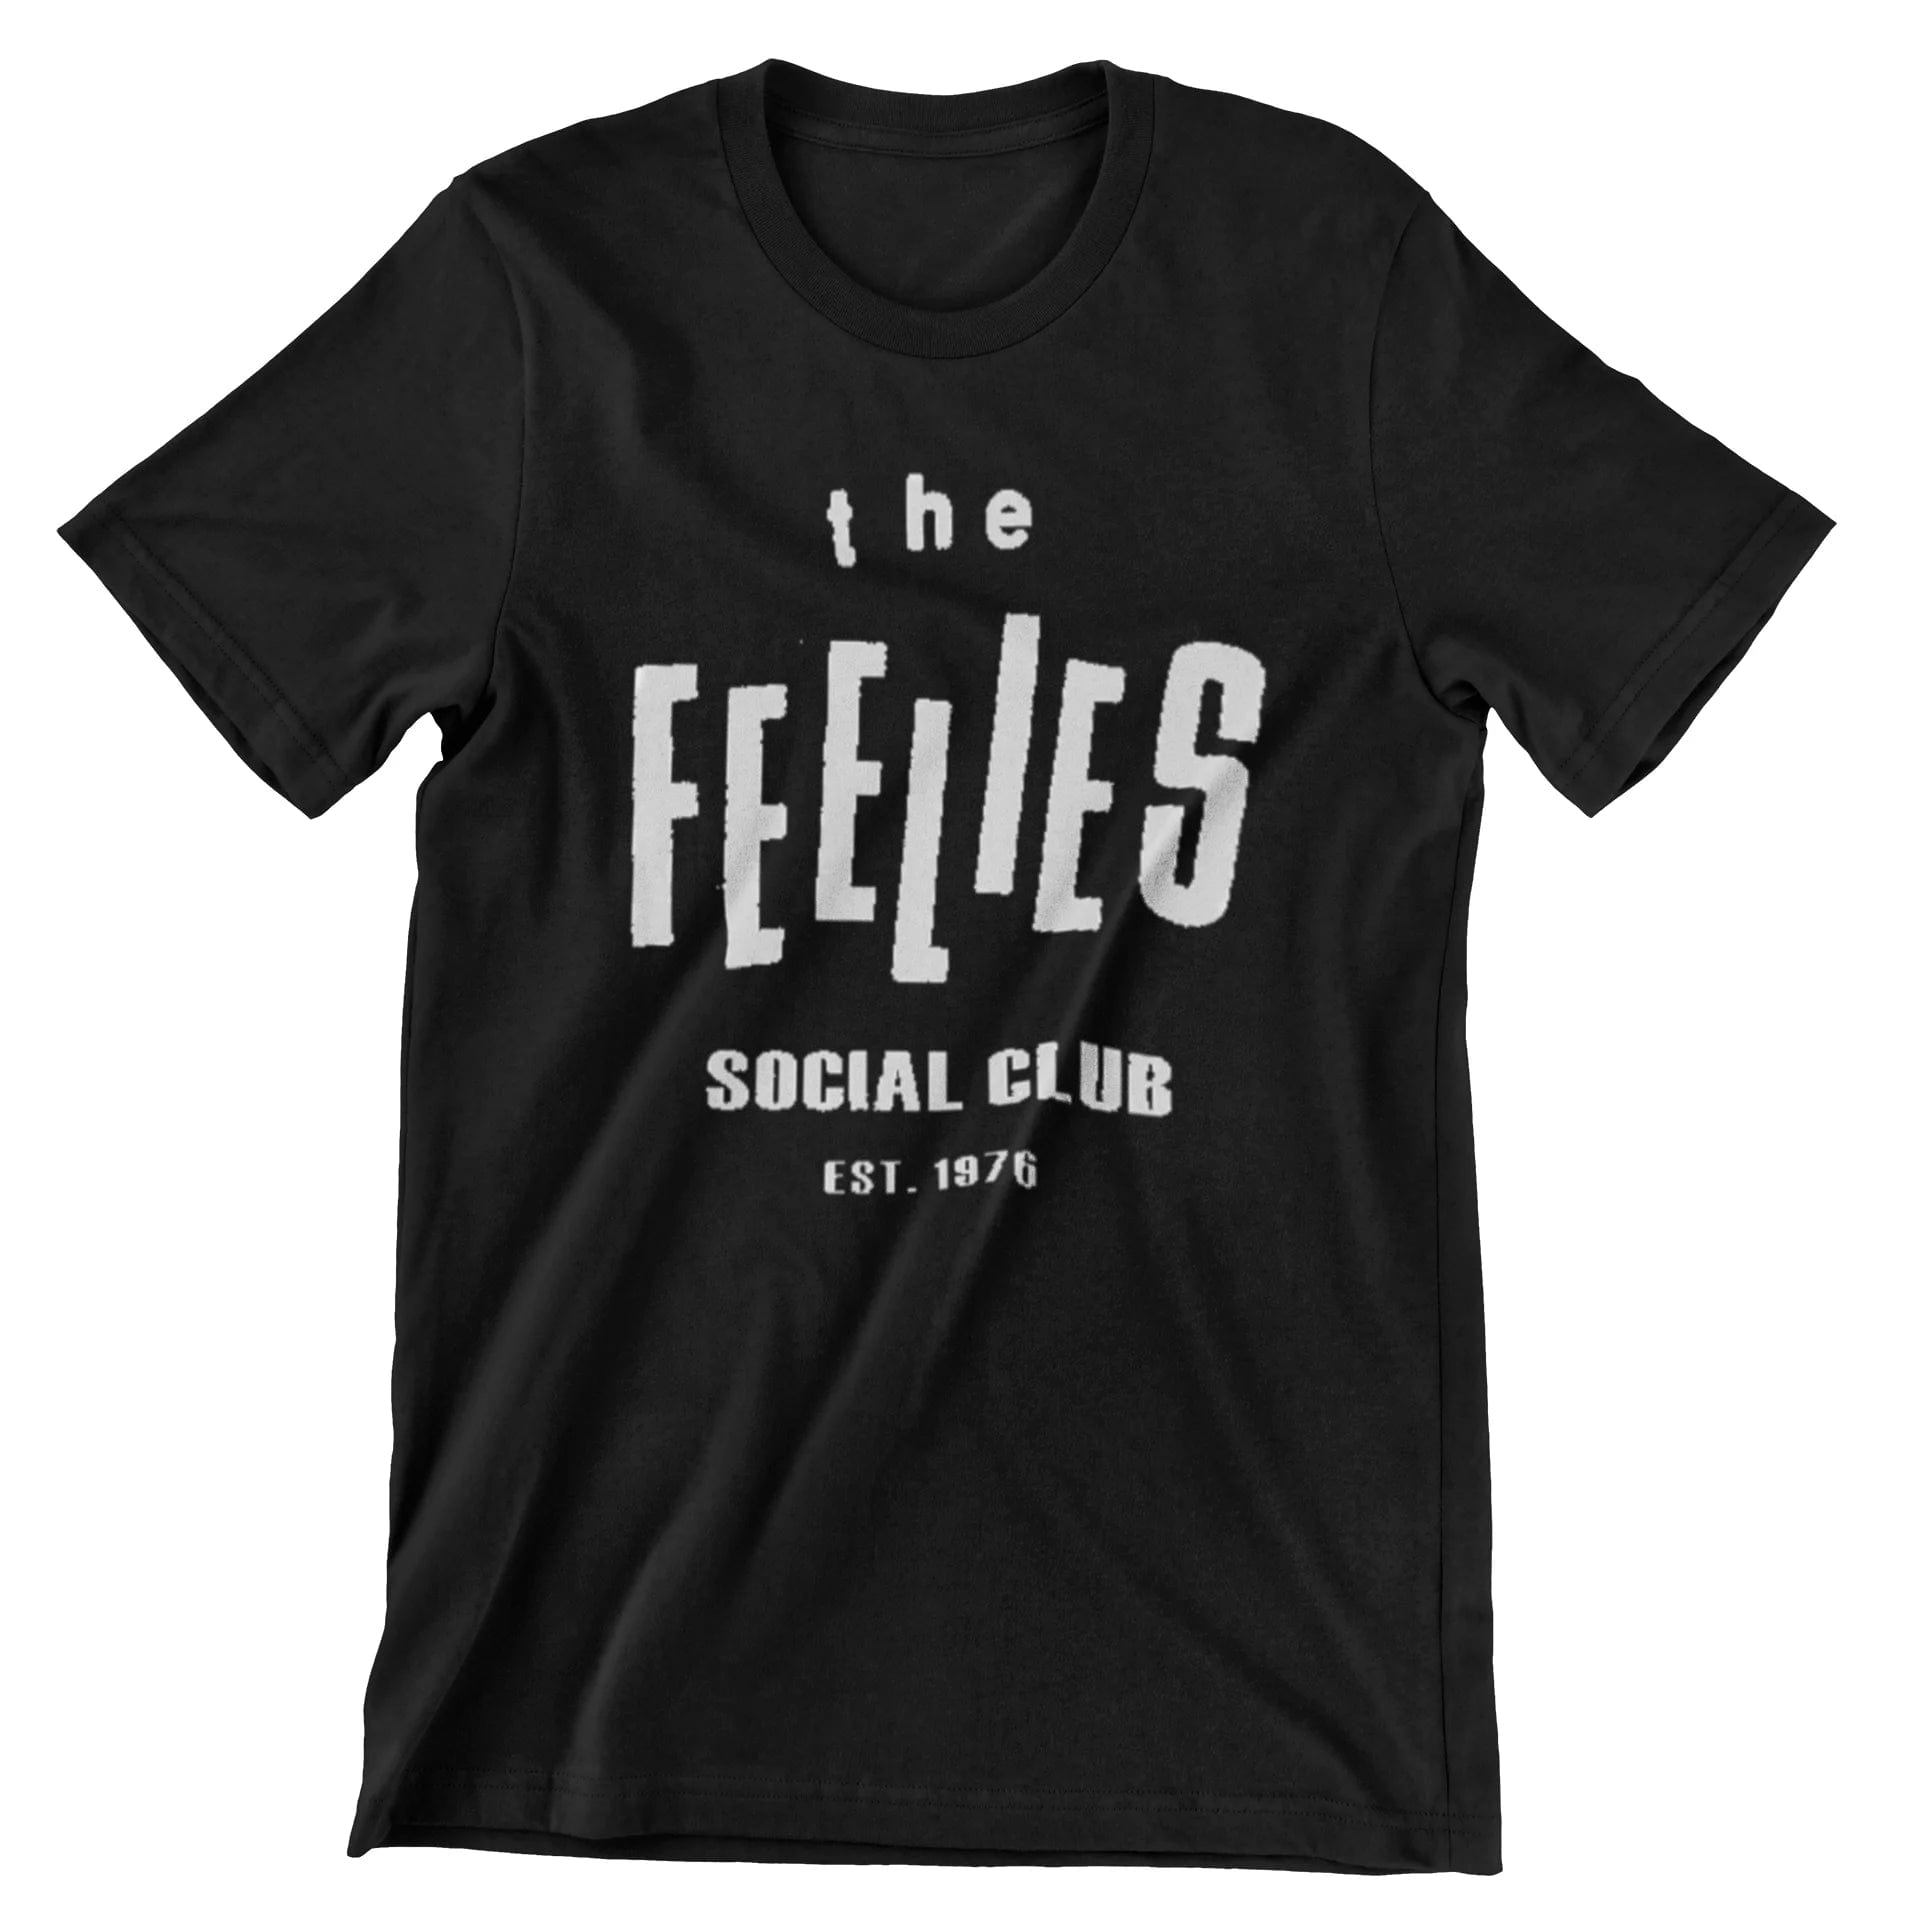 The Feelies T Shirt Social Club t shirts rockviewtees.com